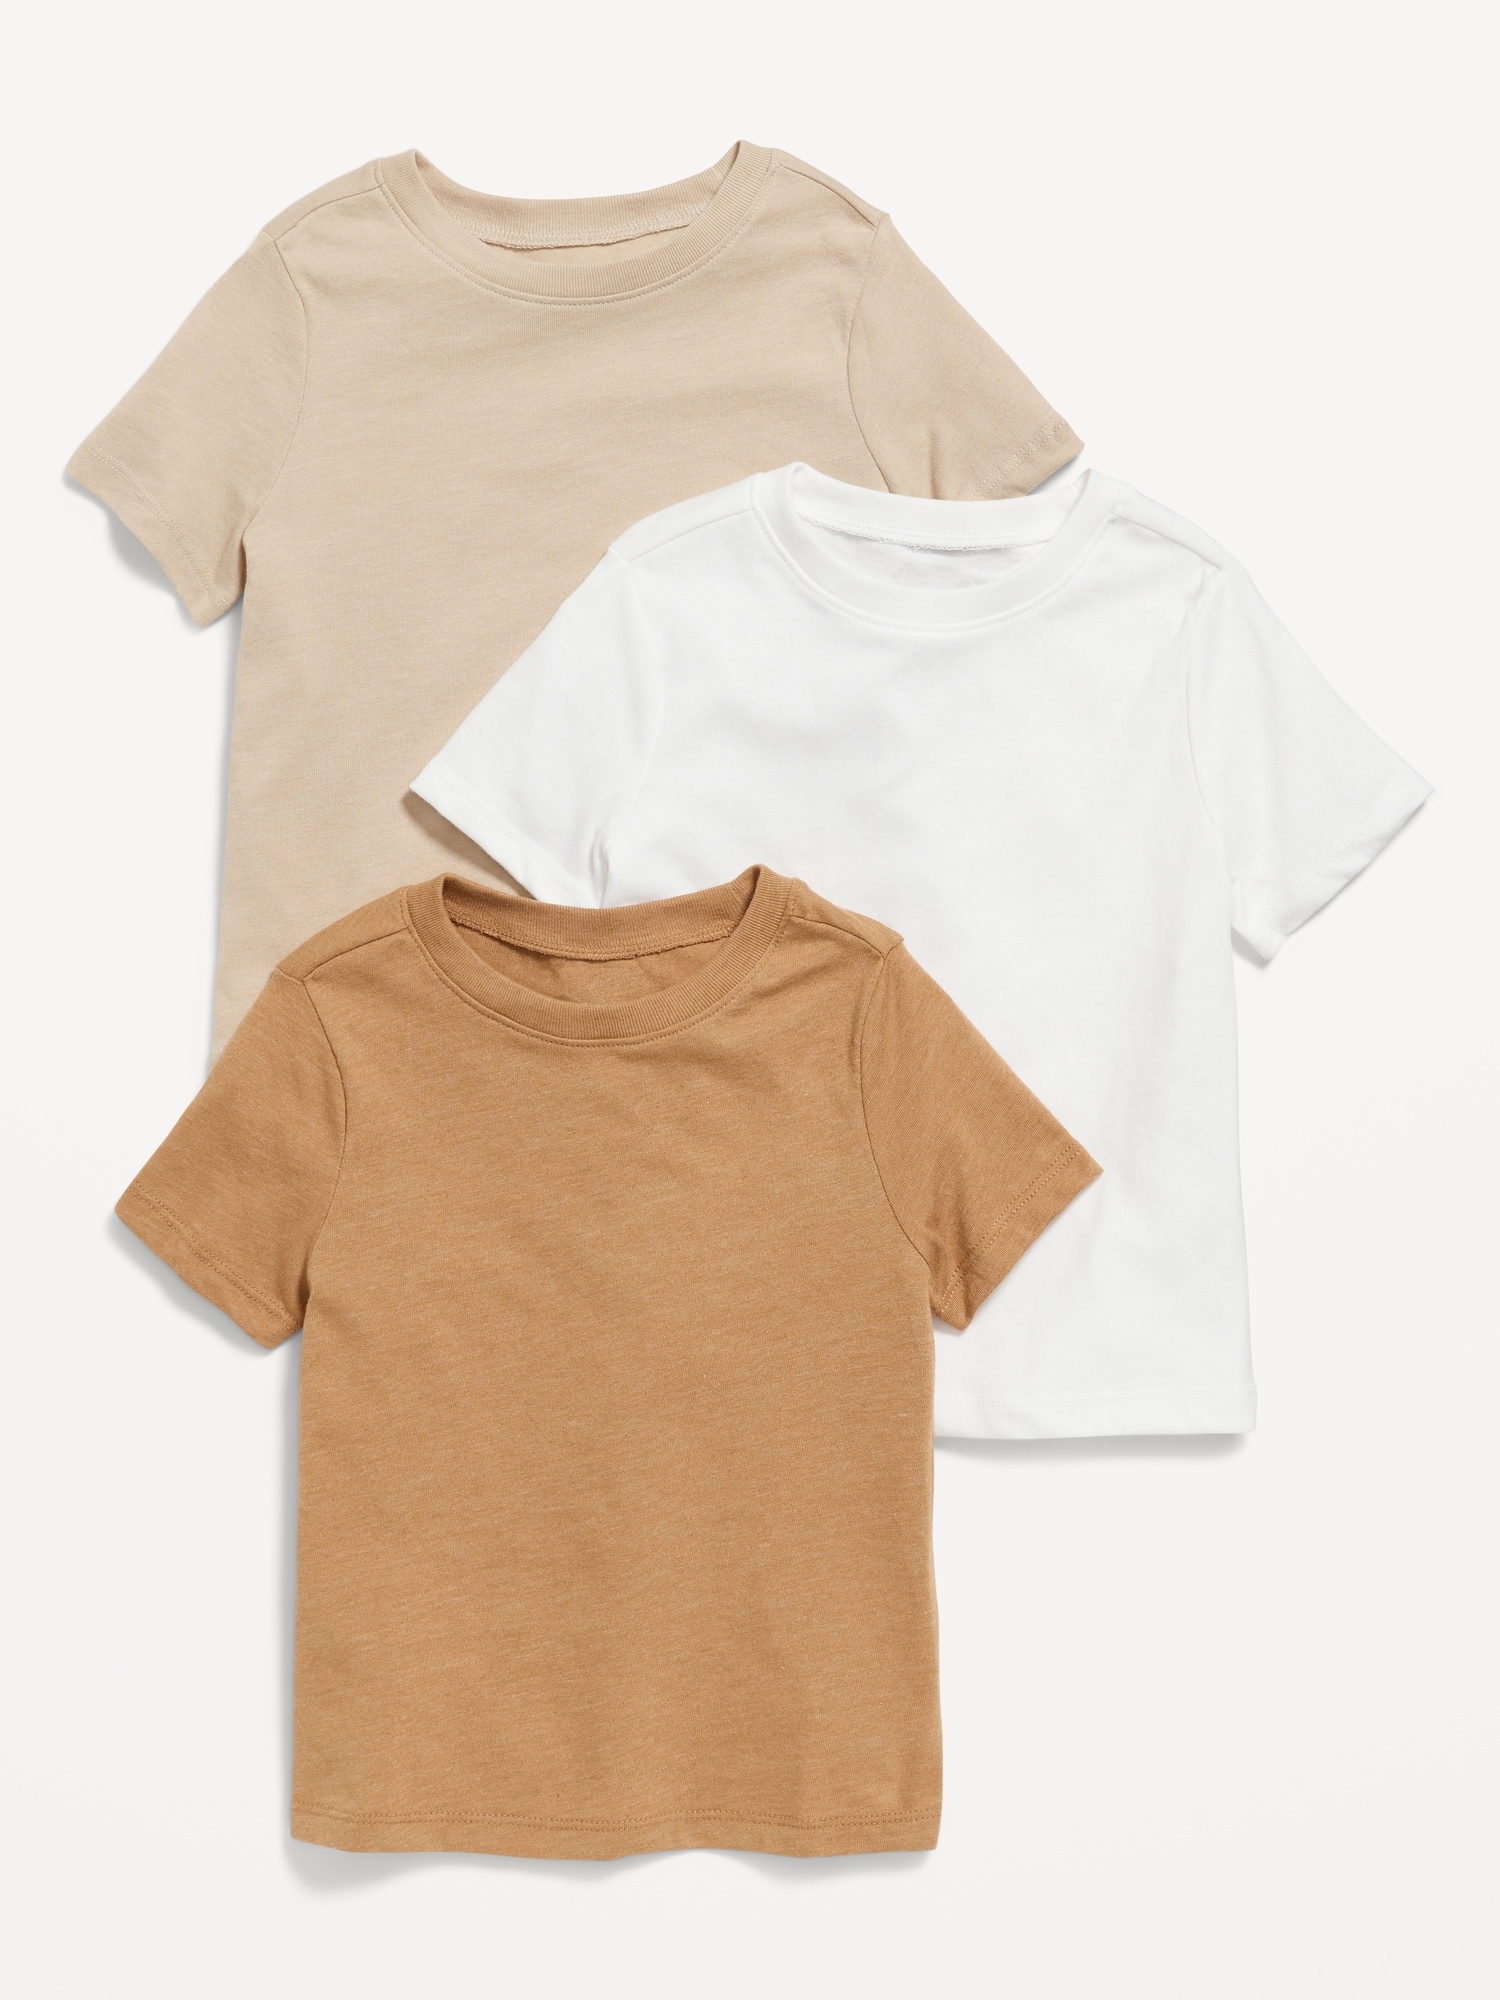 Short-Sleeve T-Shirt 3-Pack for Toddler Boys